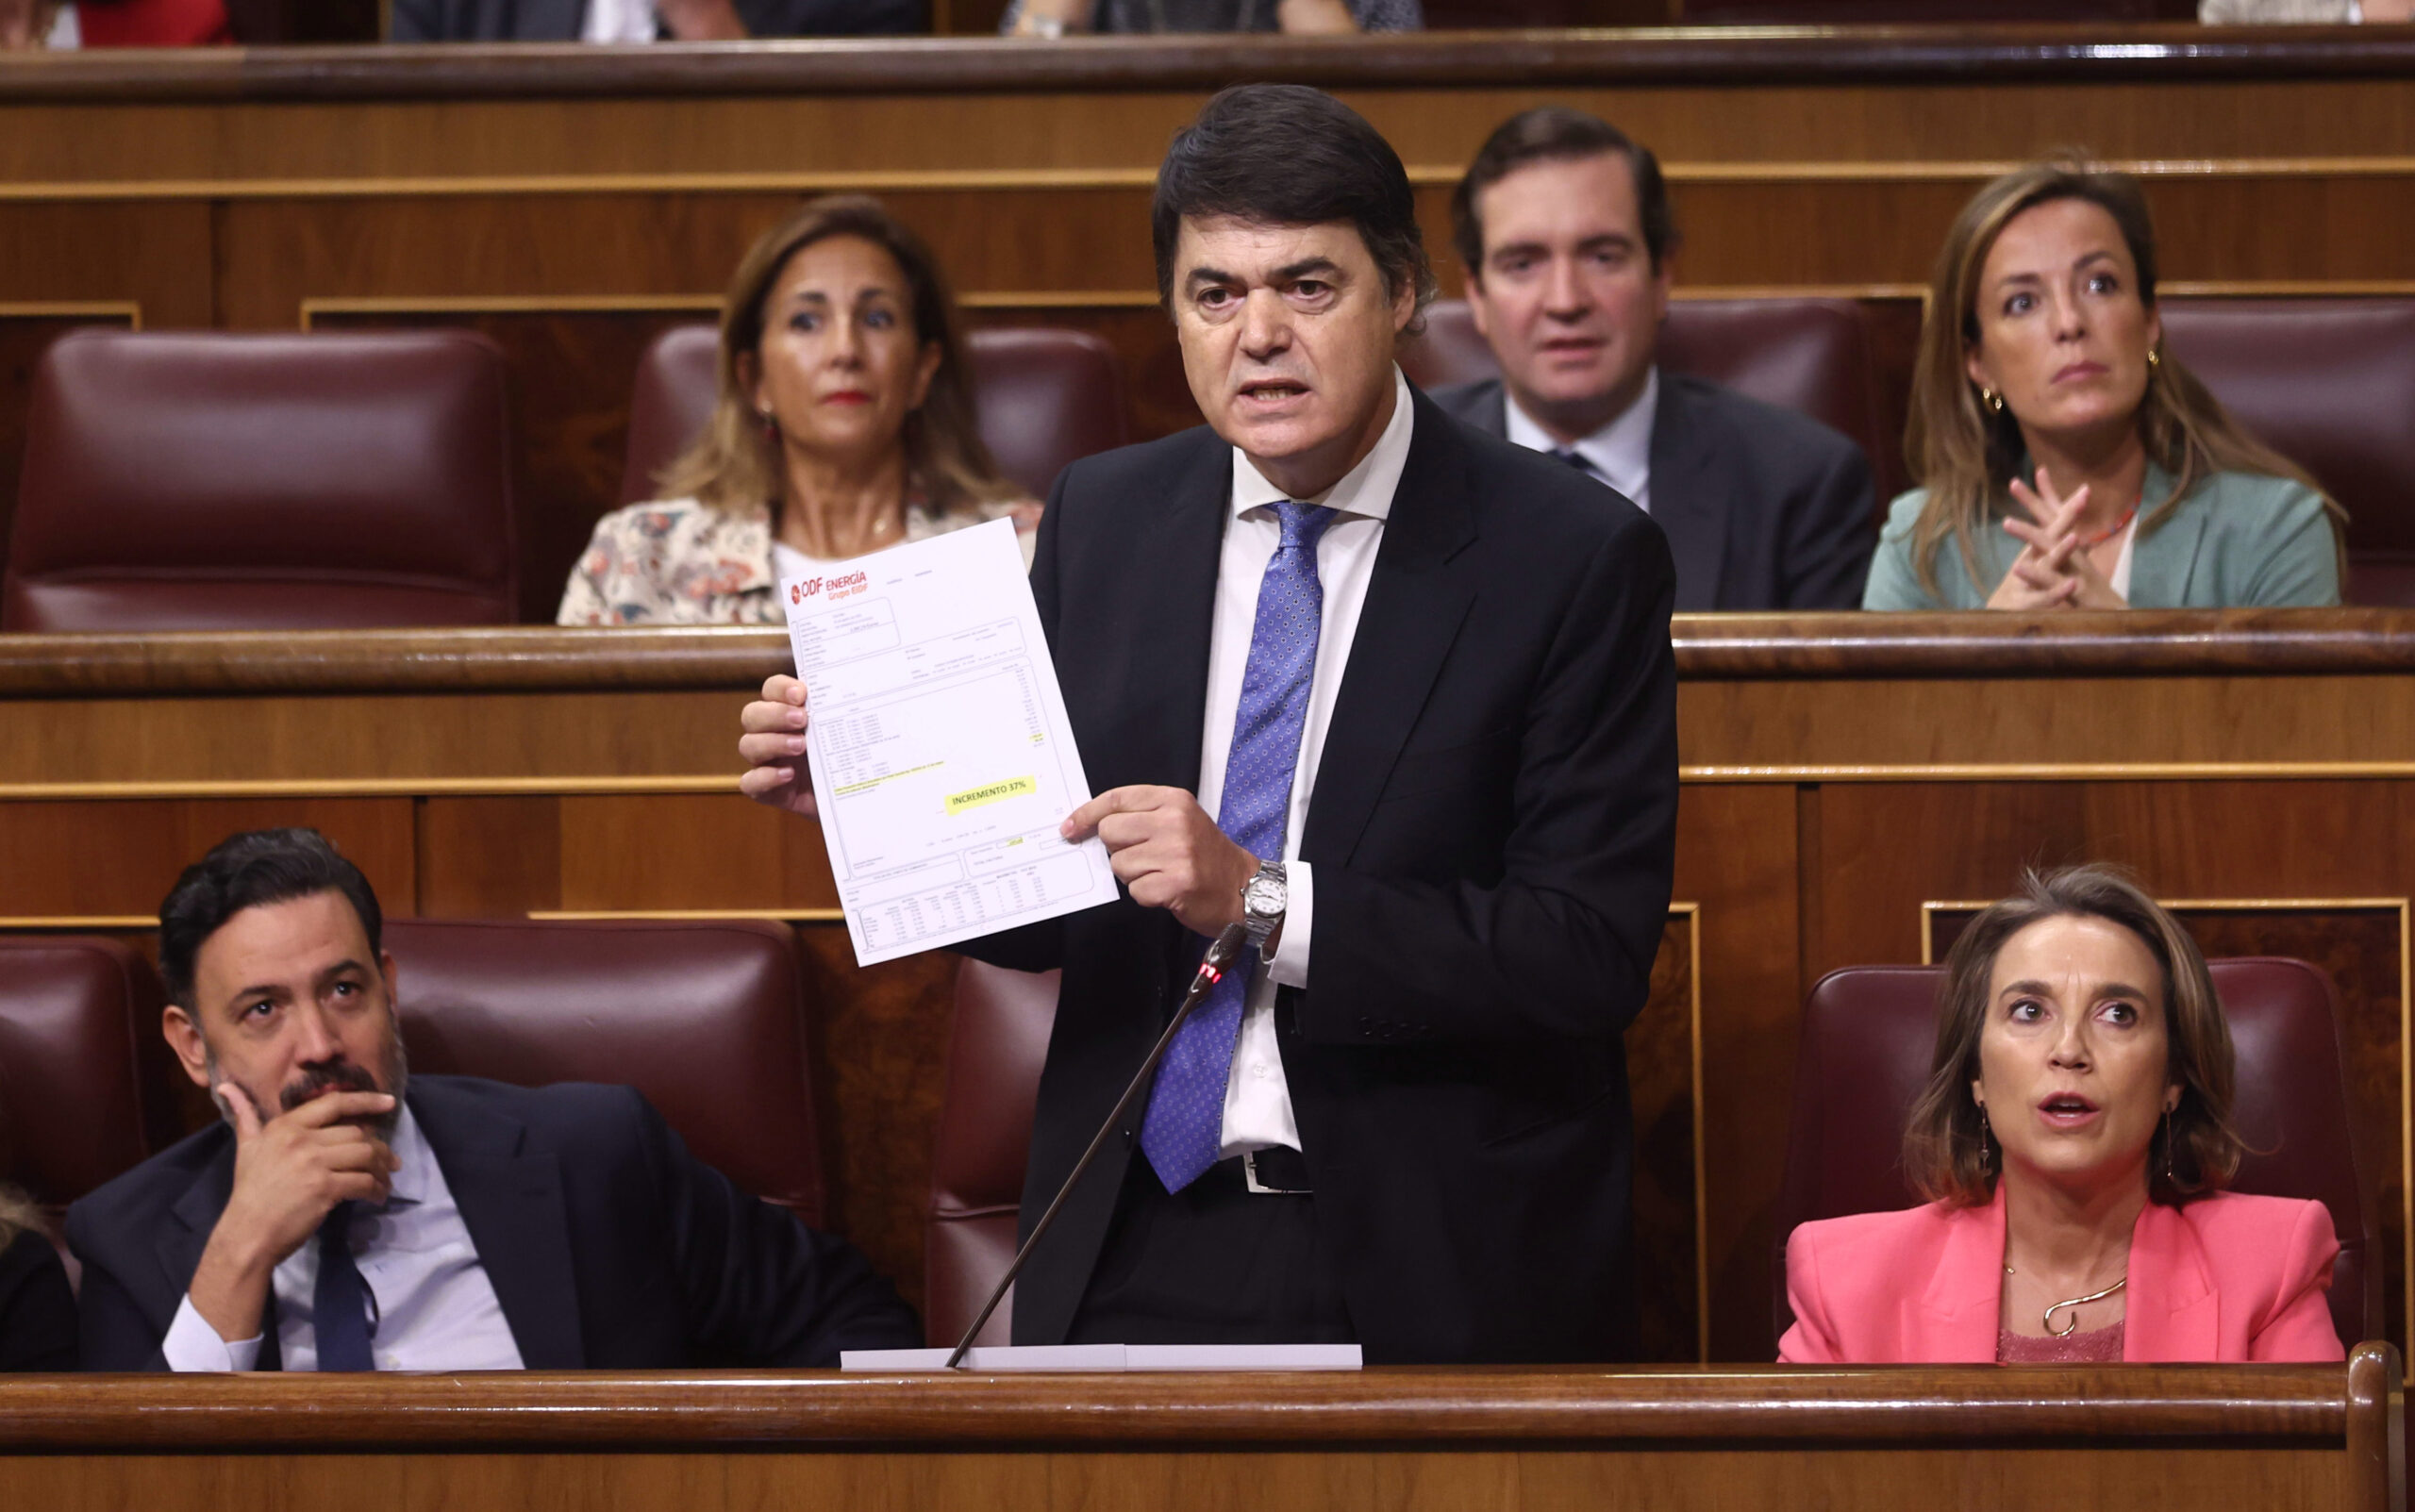 El PP propone preguntar a Ximo Puig para encontrar las respuestas en materia fiscal